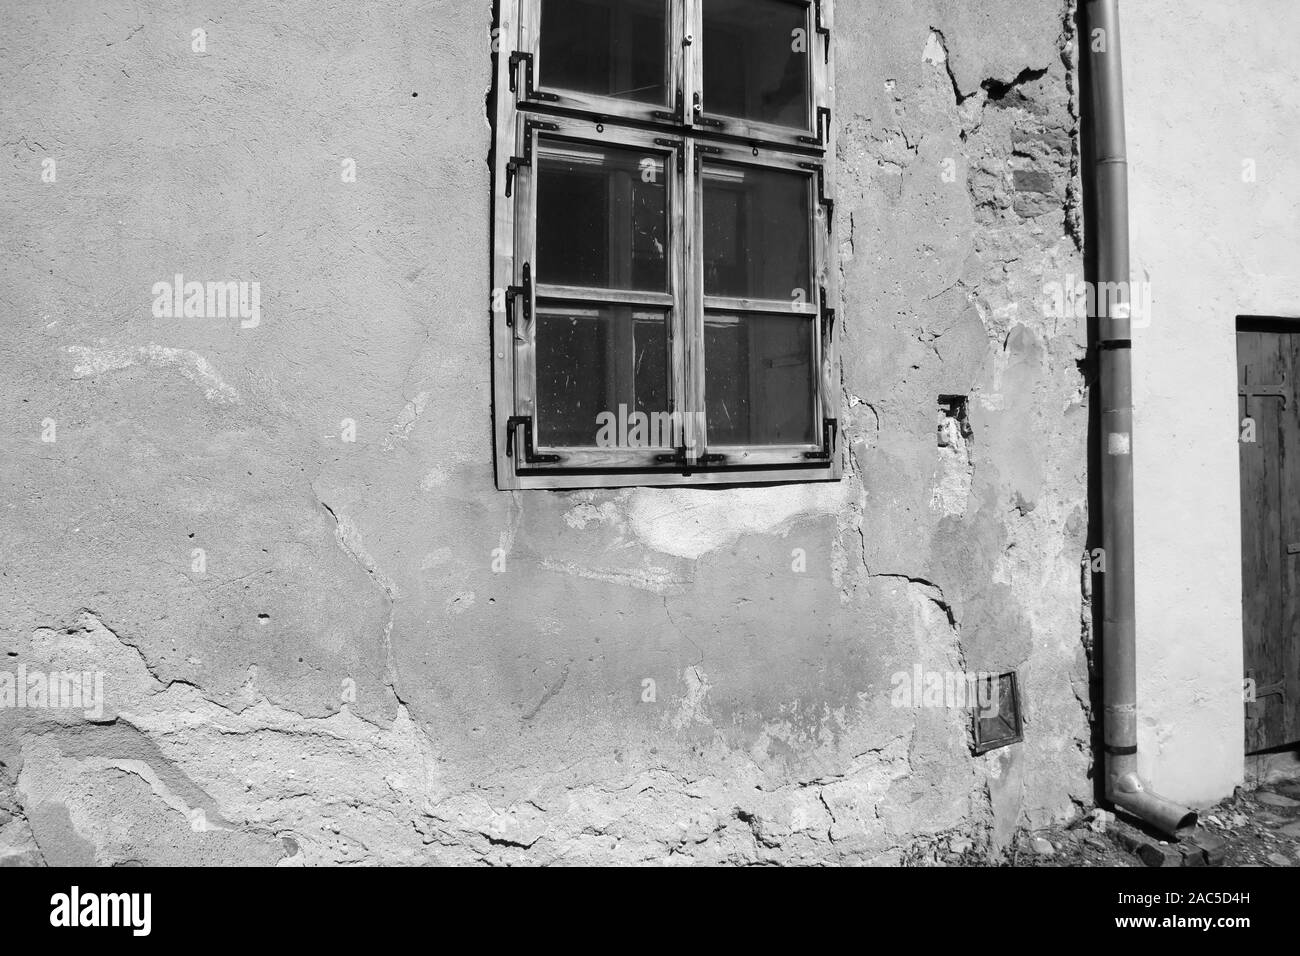 Vue d'une maison ancienne avec des fissures sur le mur et fenêtre, photo en noir et blanc Banque D'Images